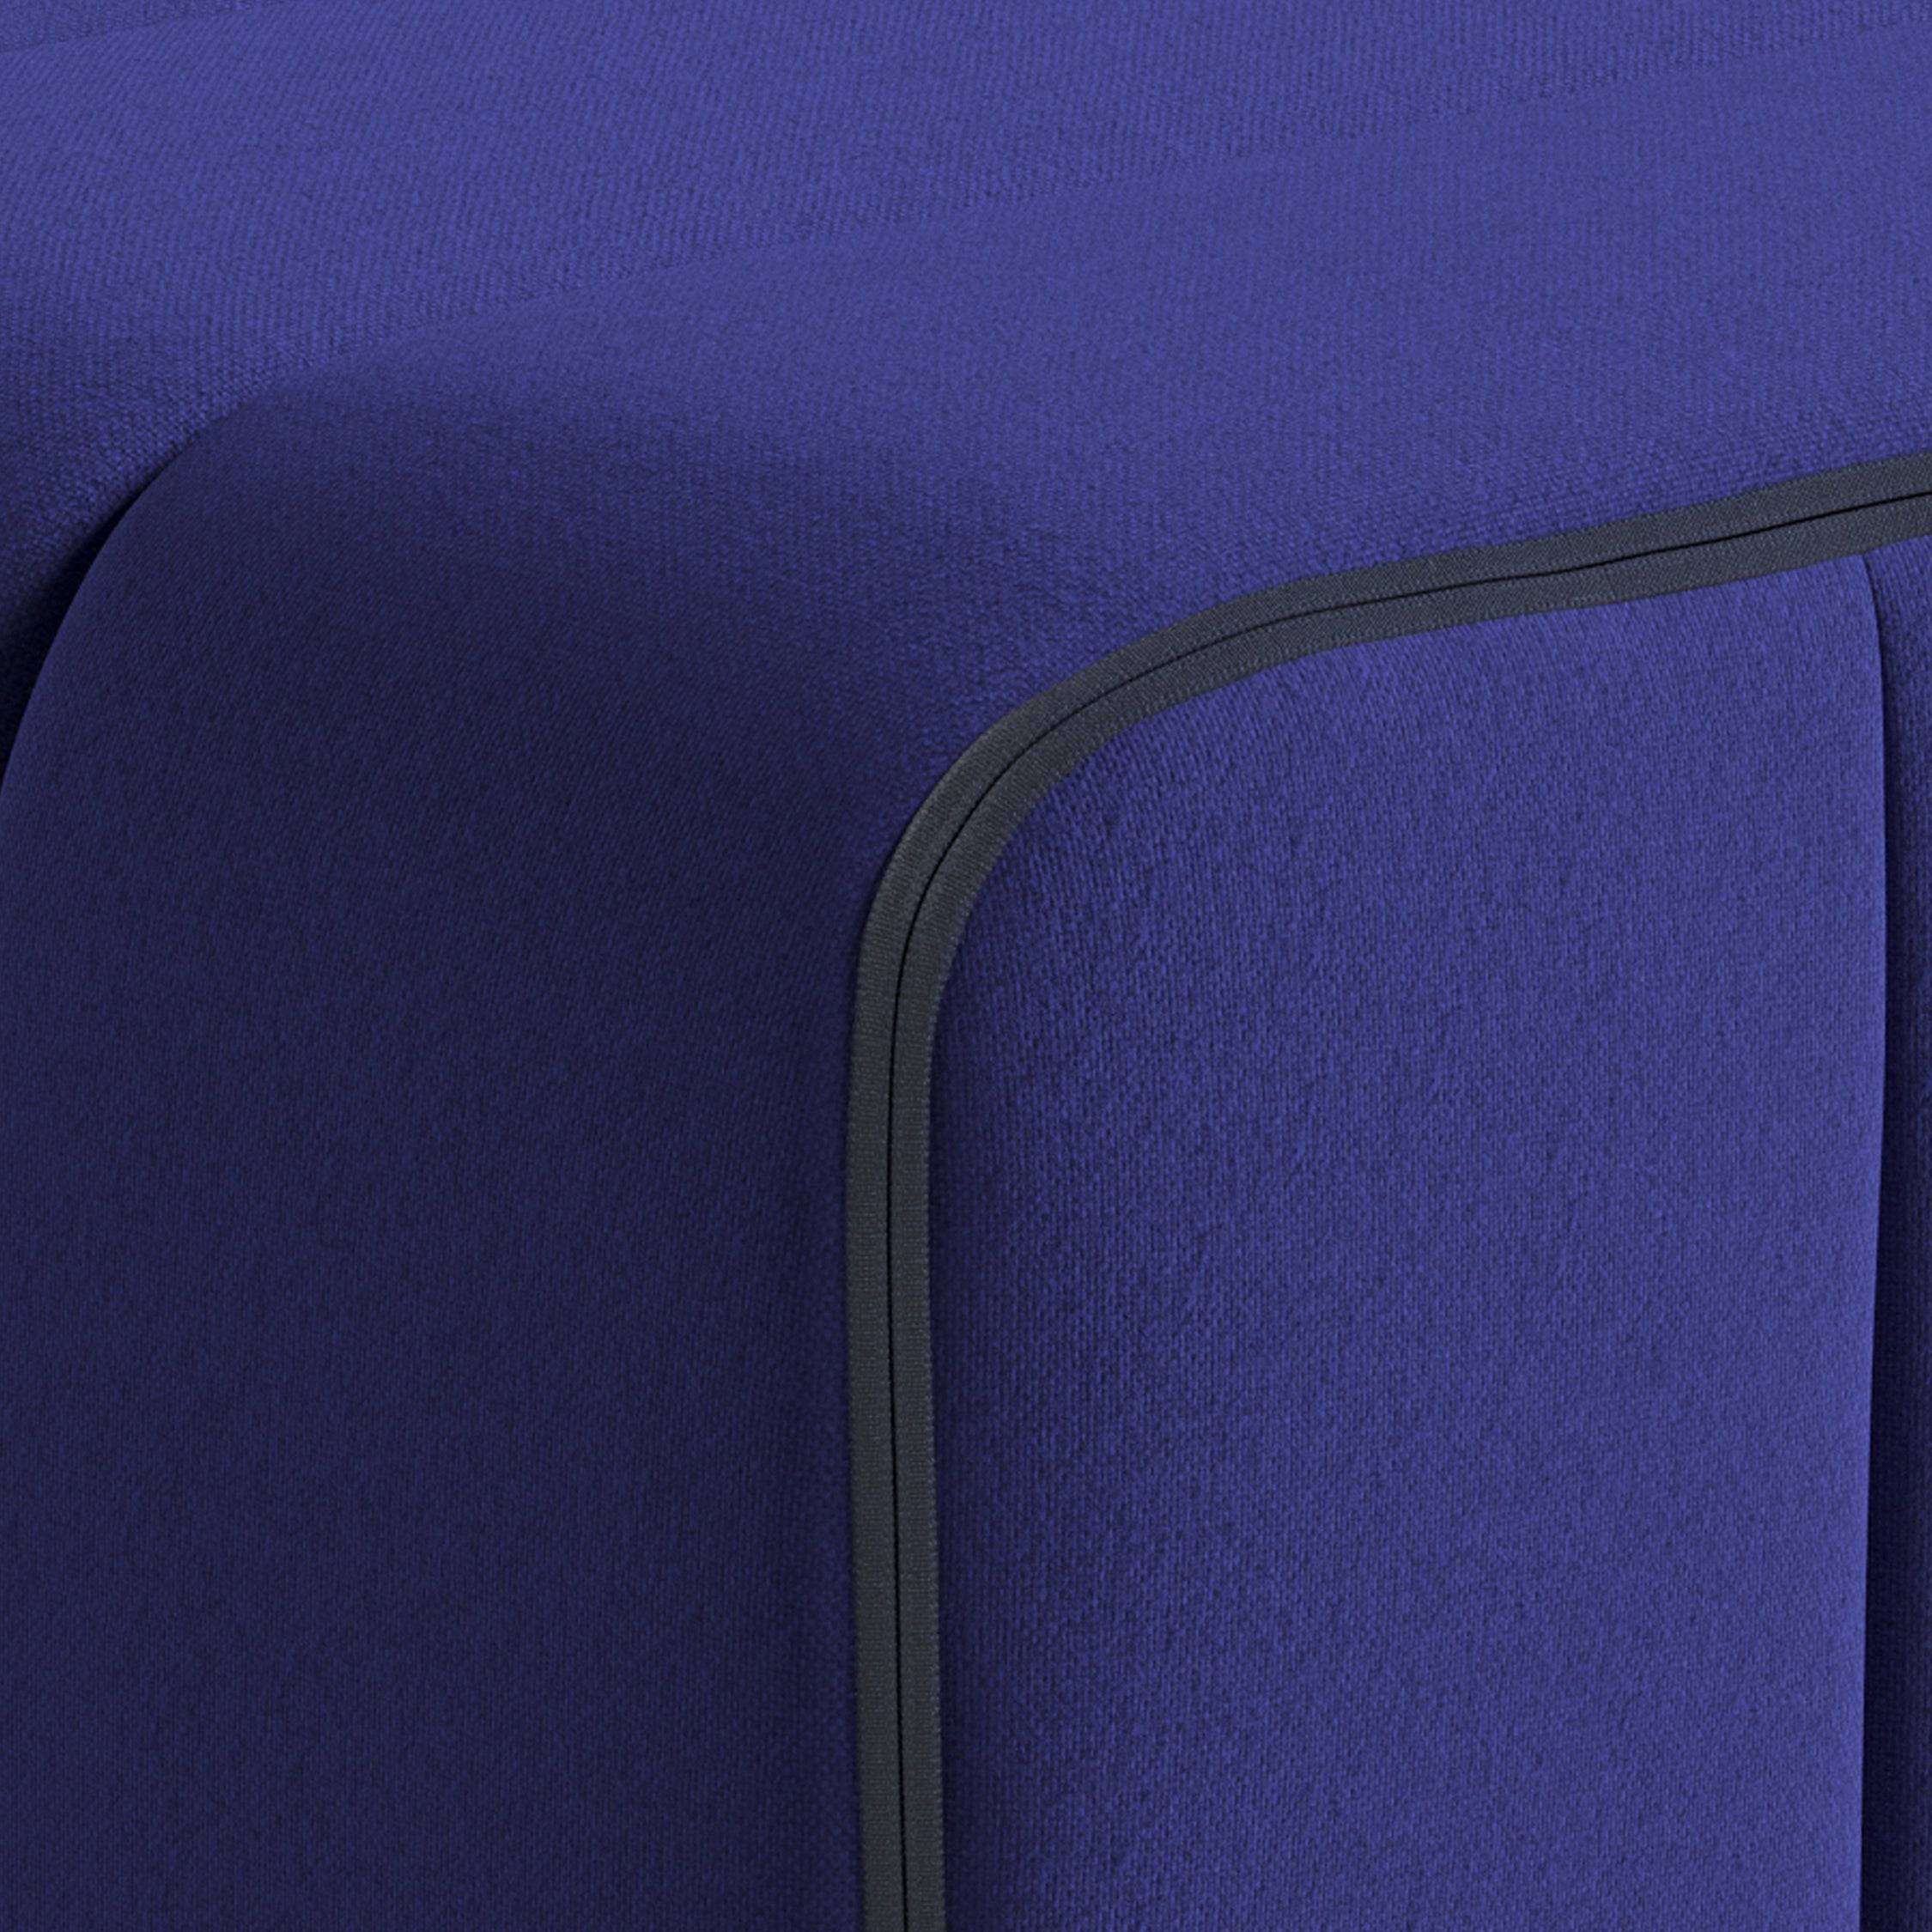 Système de canapé Curt - Jet Blue Violett